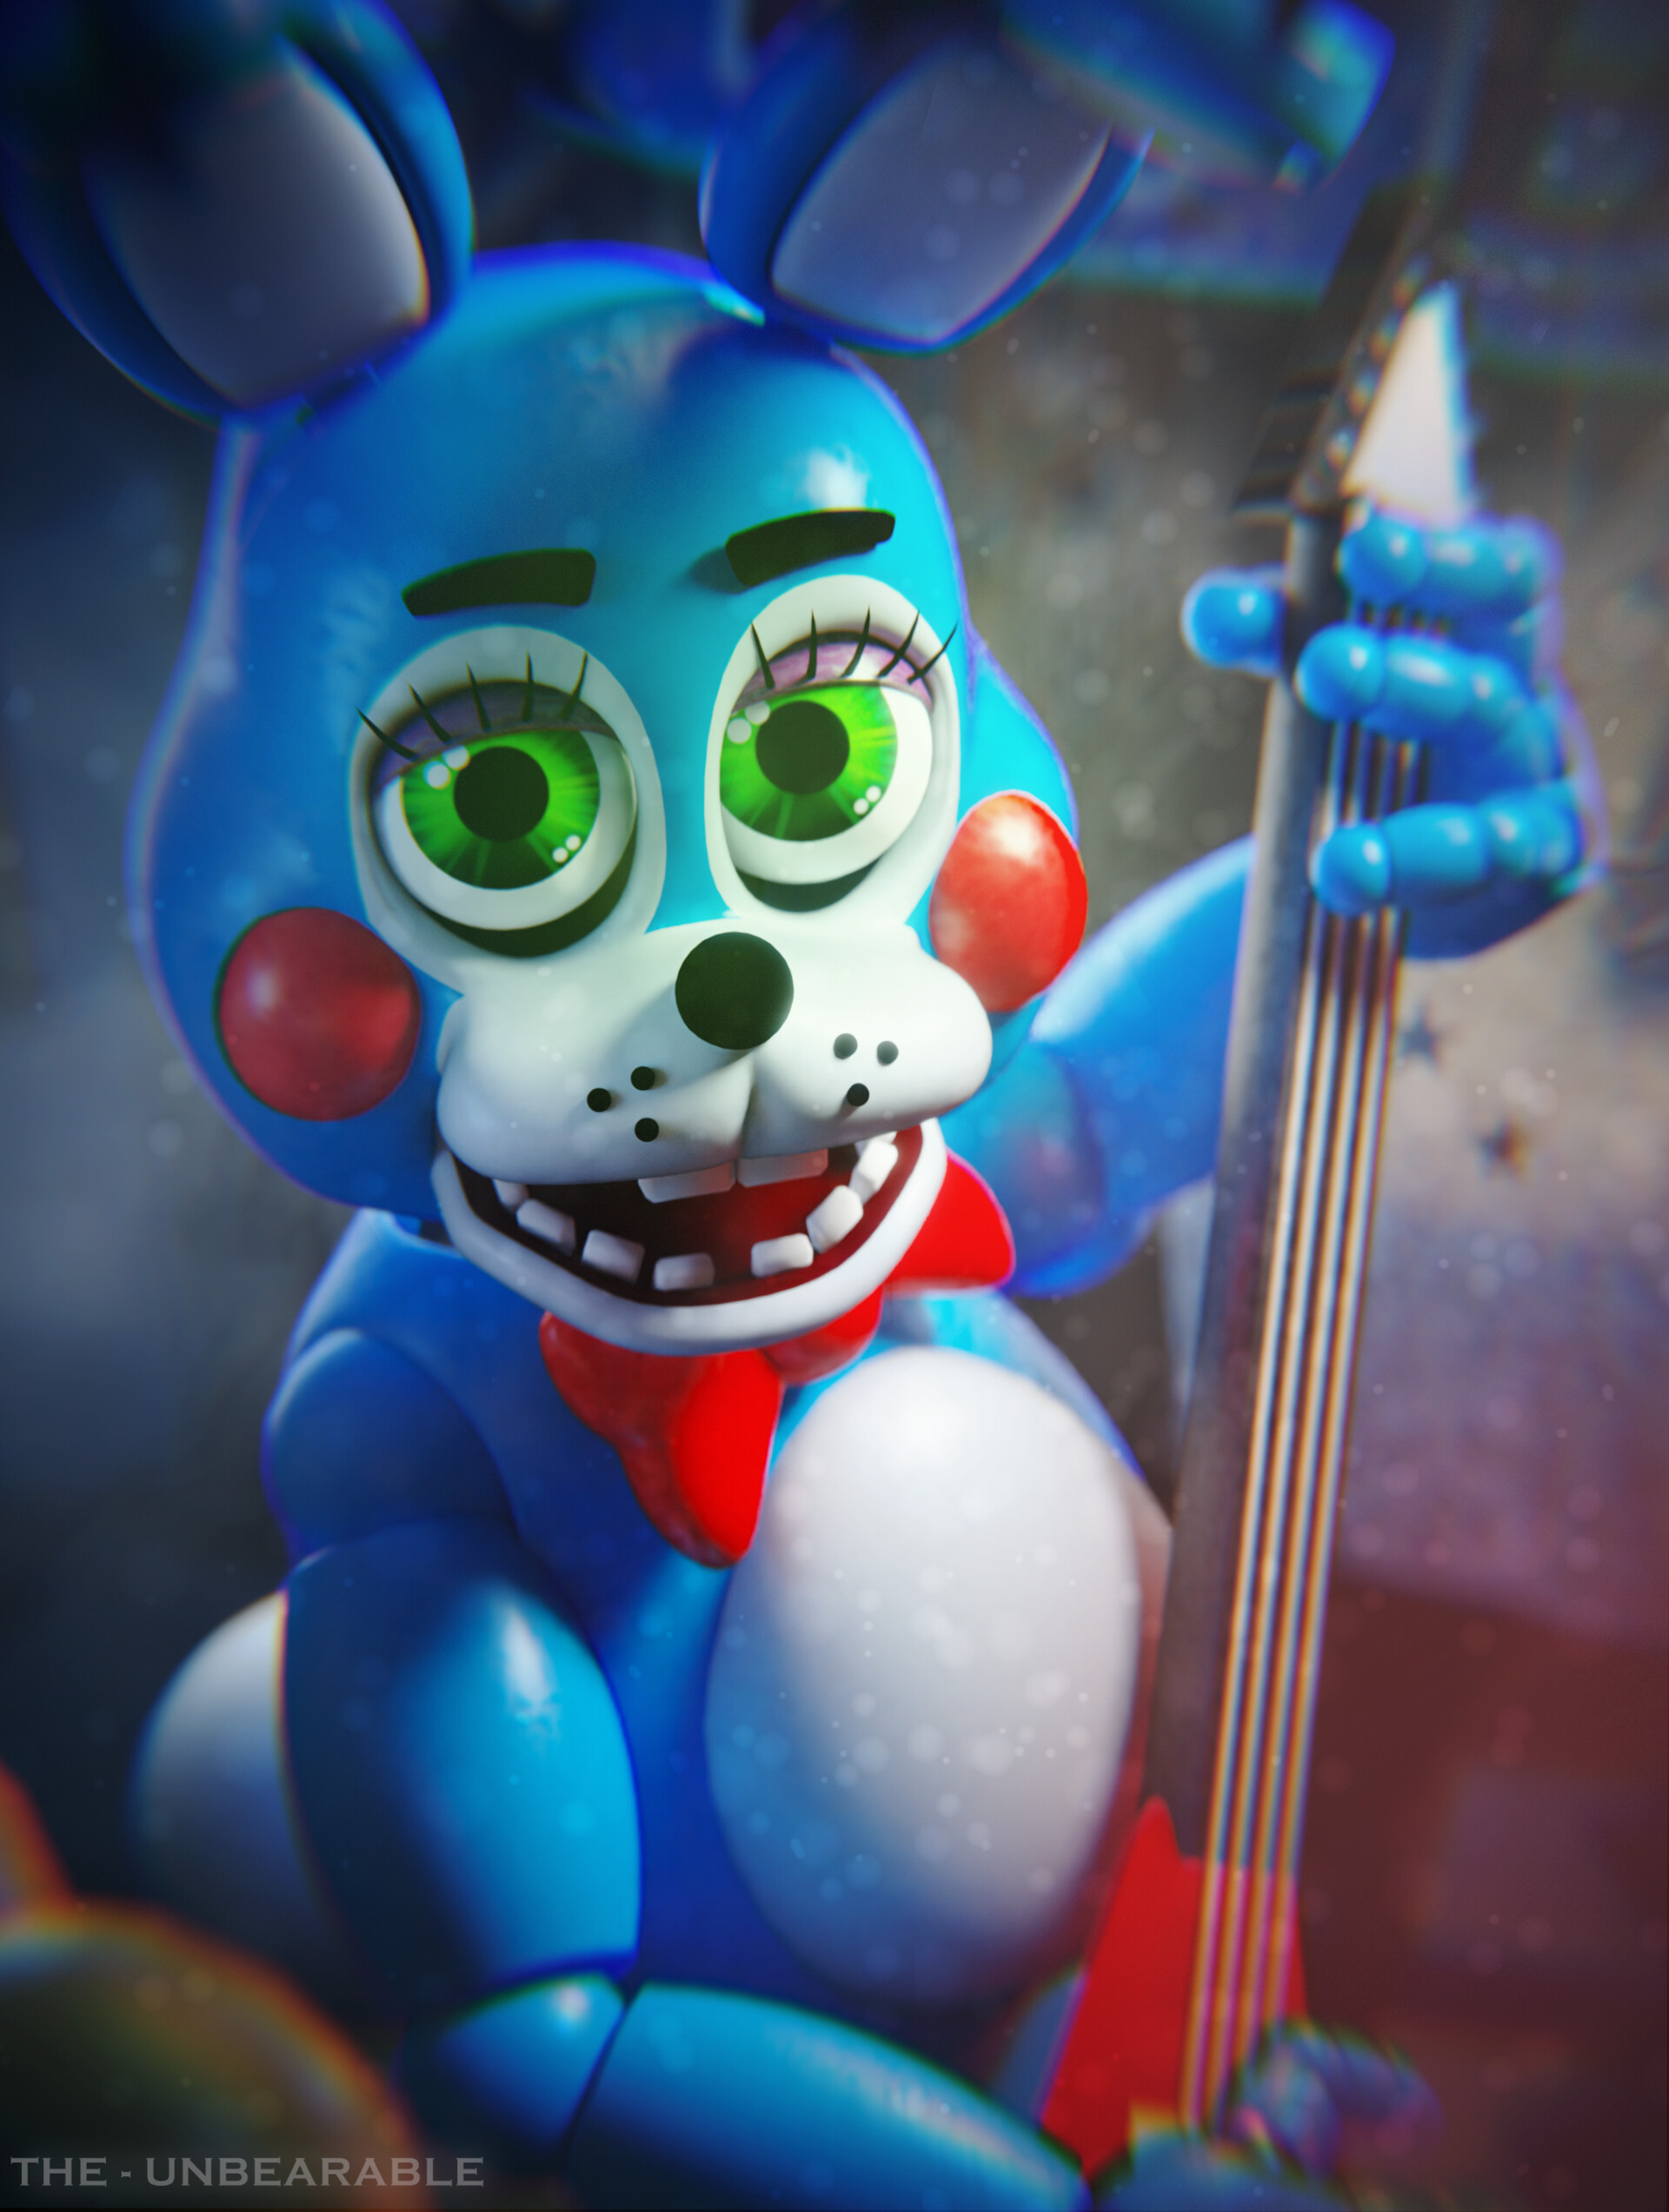 FNAF 2: Toy Bonnie (2015) — Weasyl